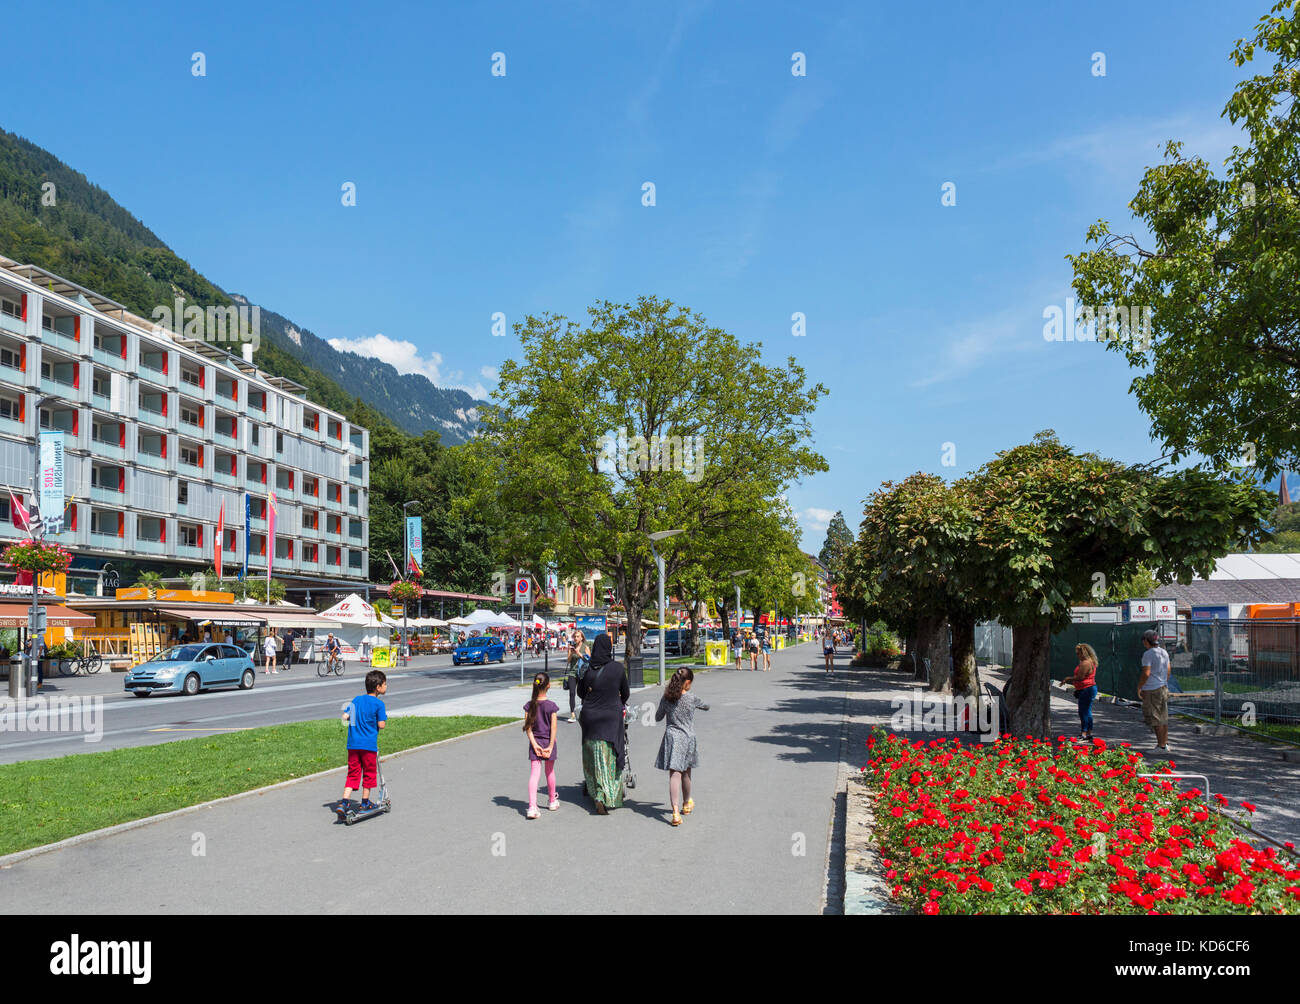 Höheweg, la rue principale d'Interlaken, Suisse Banque D'Images